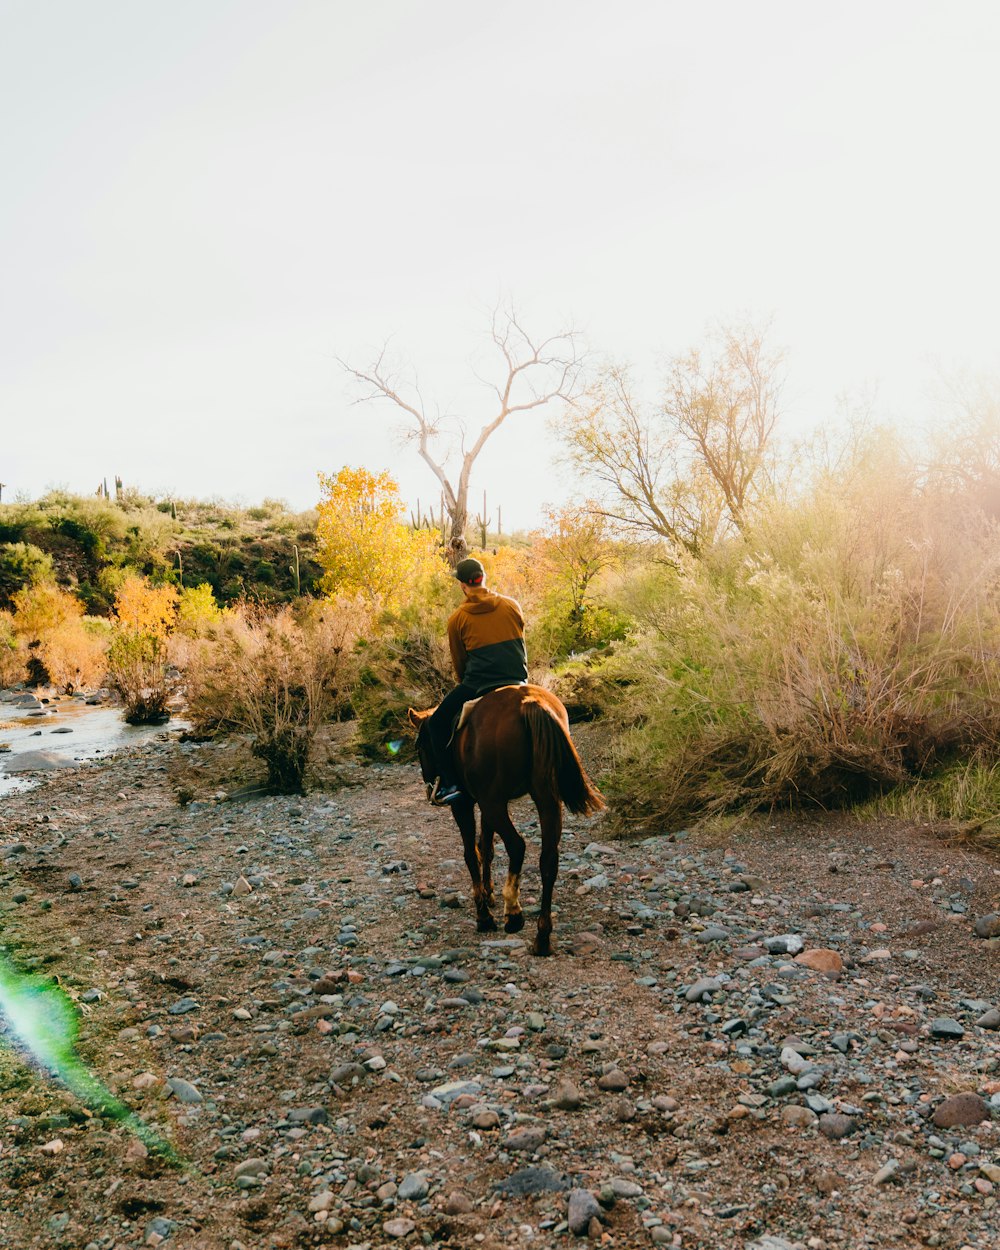 a man riding a horse down a dirt road